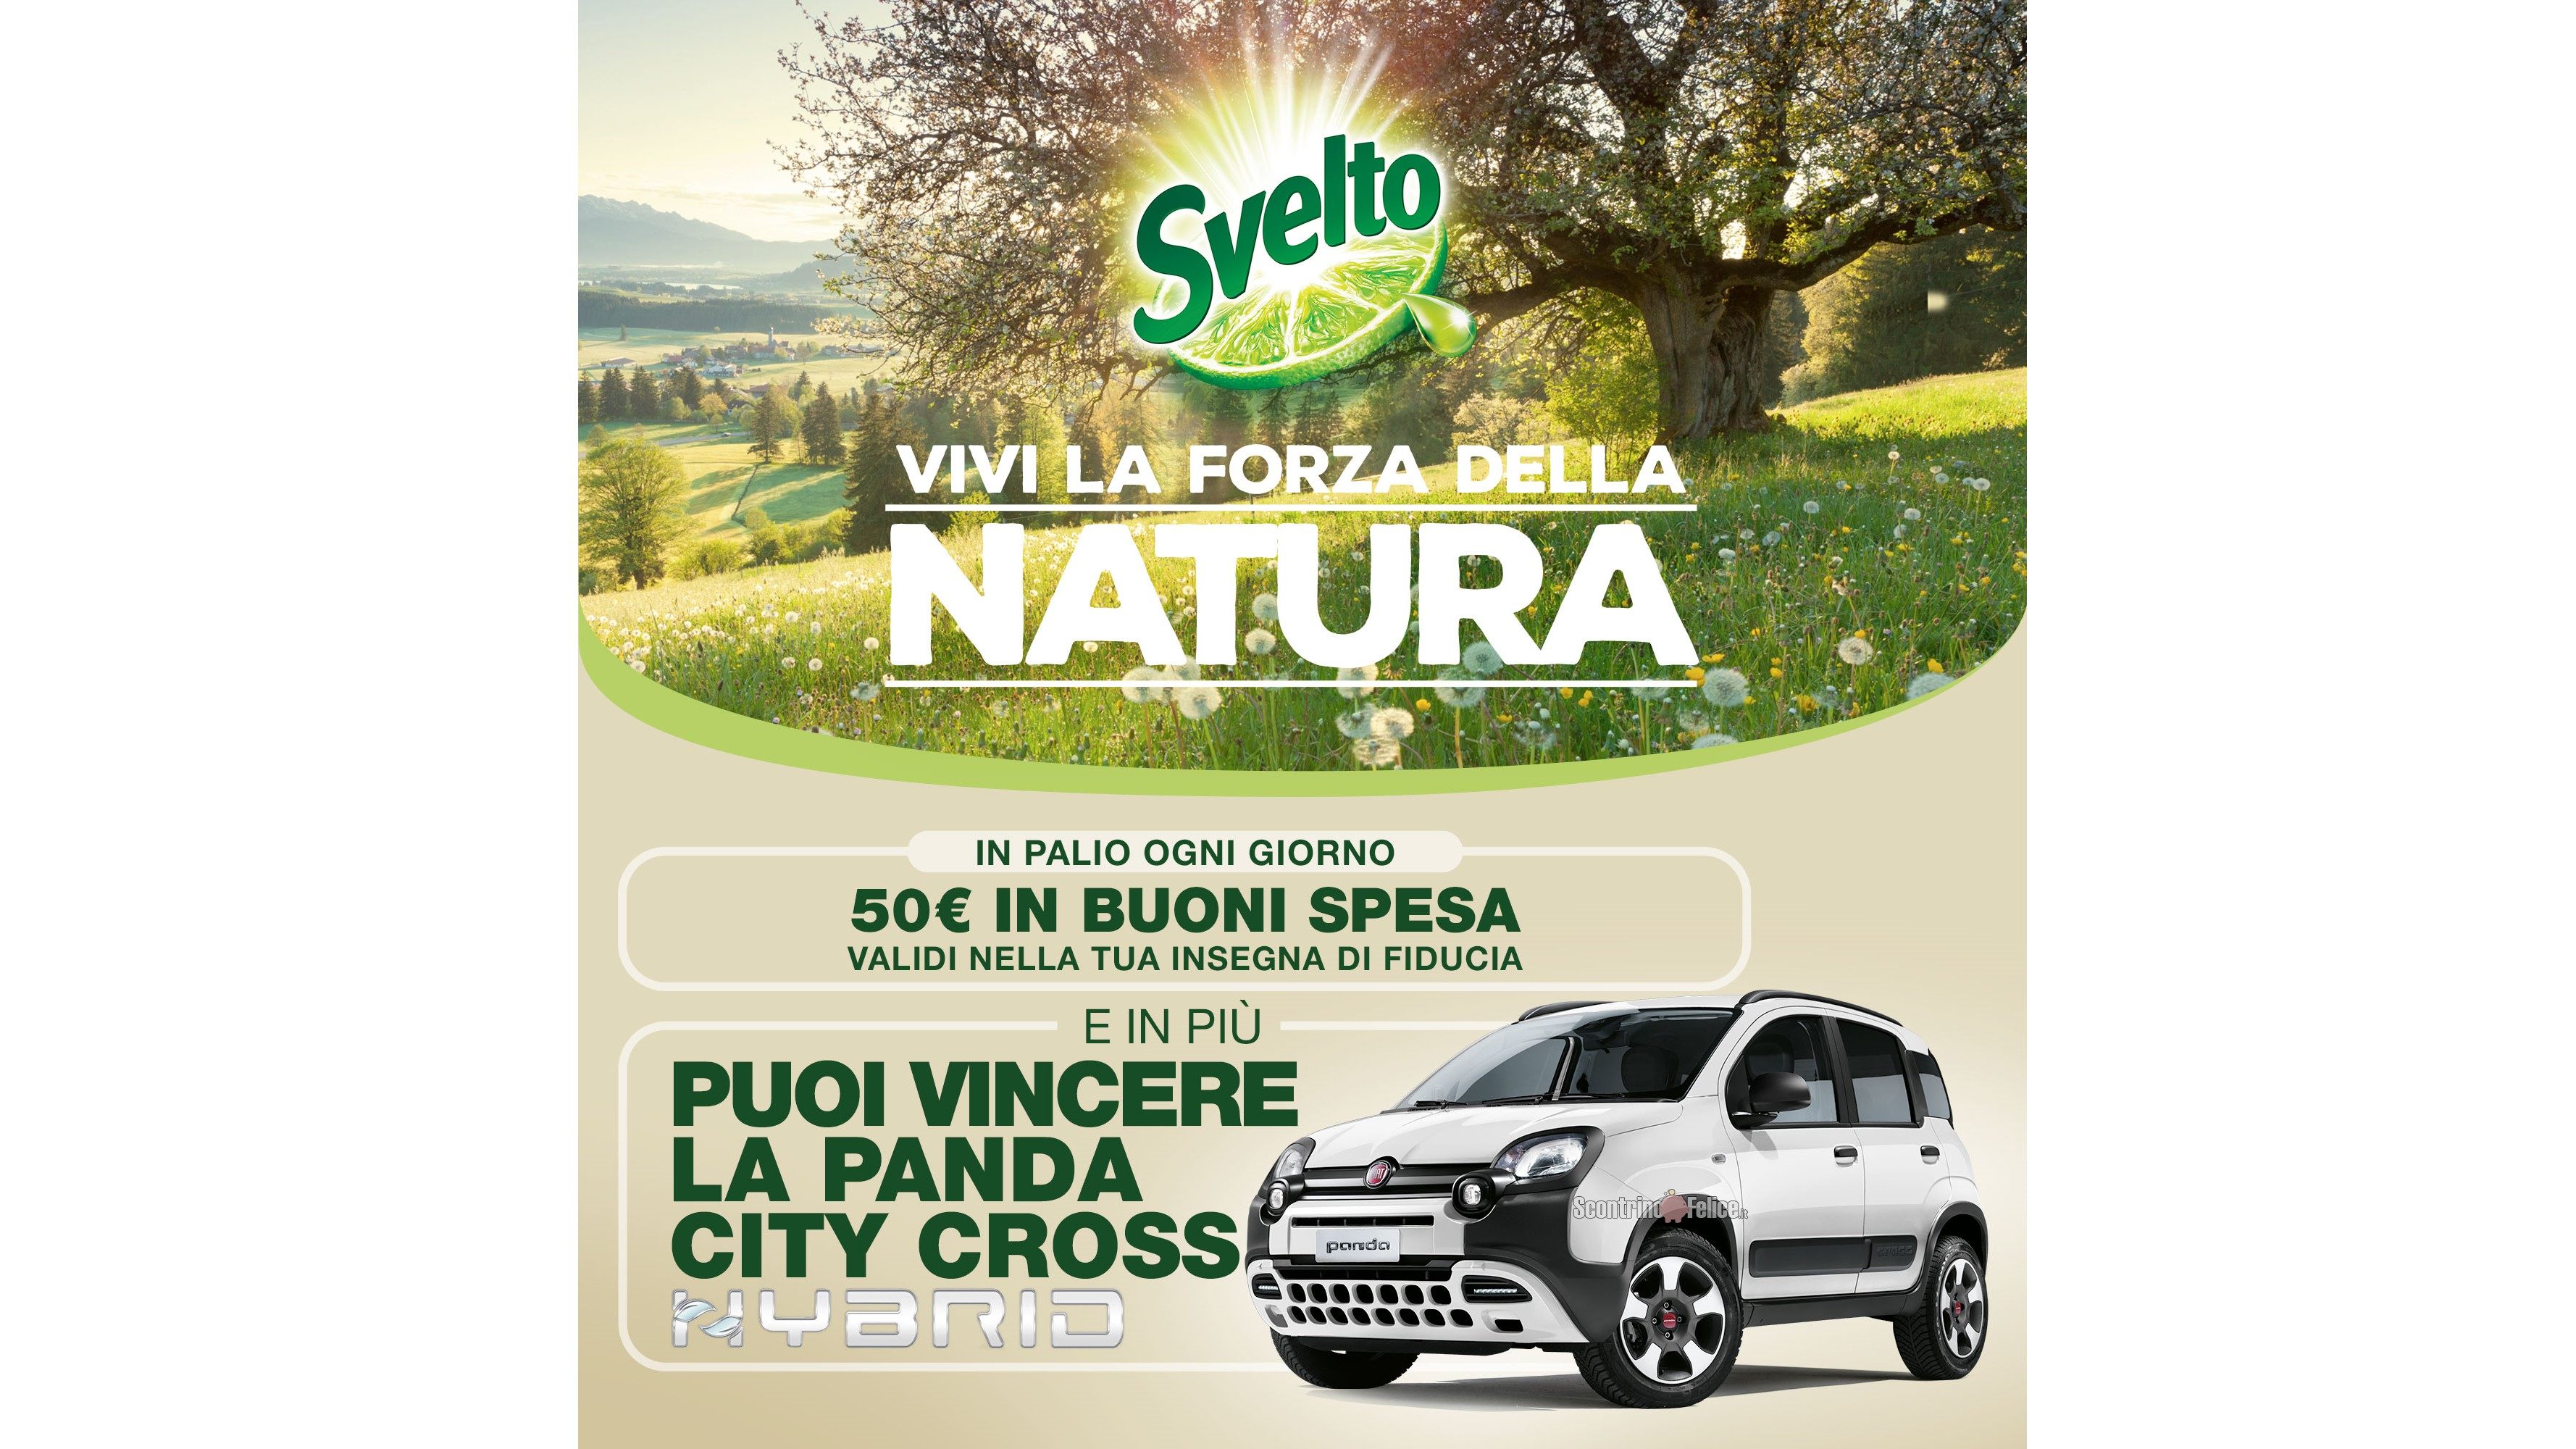 Concorso Svelto "Vivi la forza della natura": vinci buoni spesa da 50 euro e una Fiat Panda City Cross Hybrid